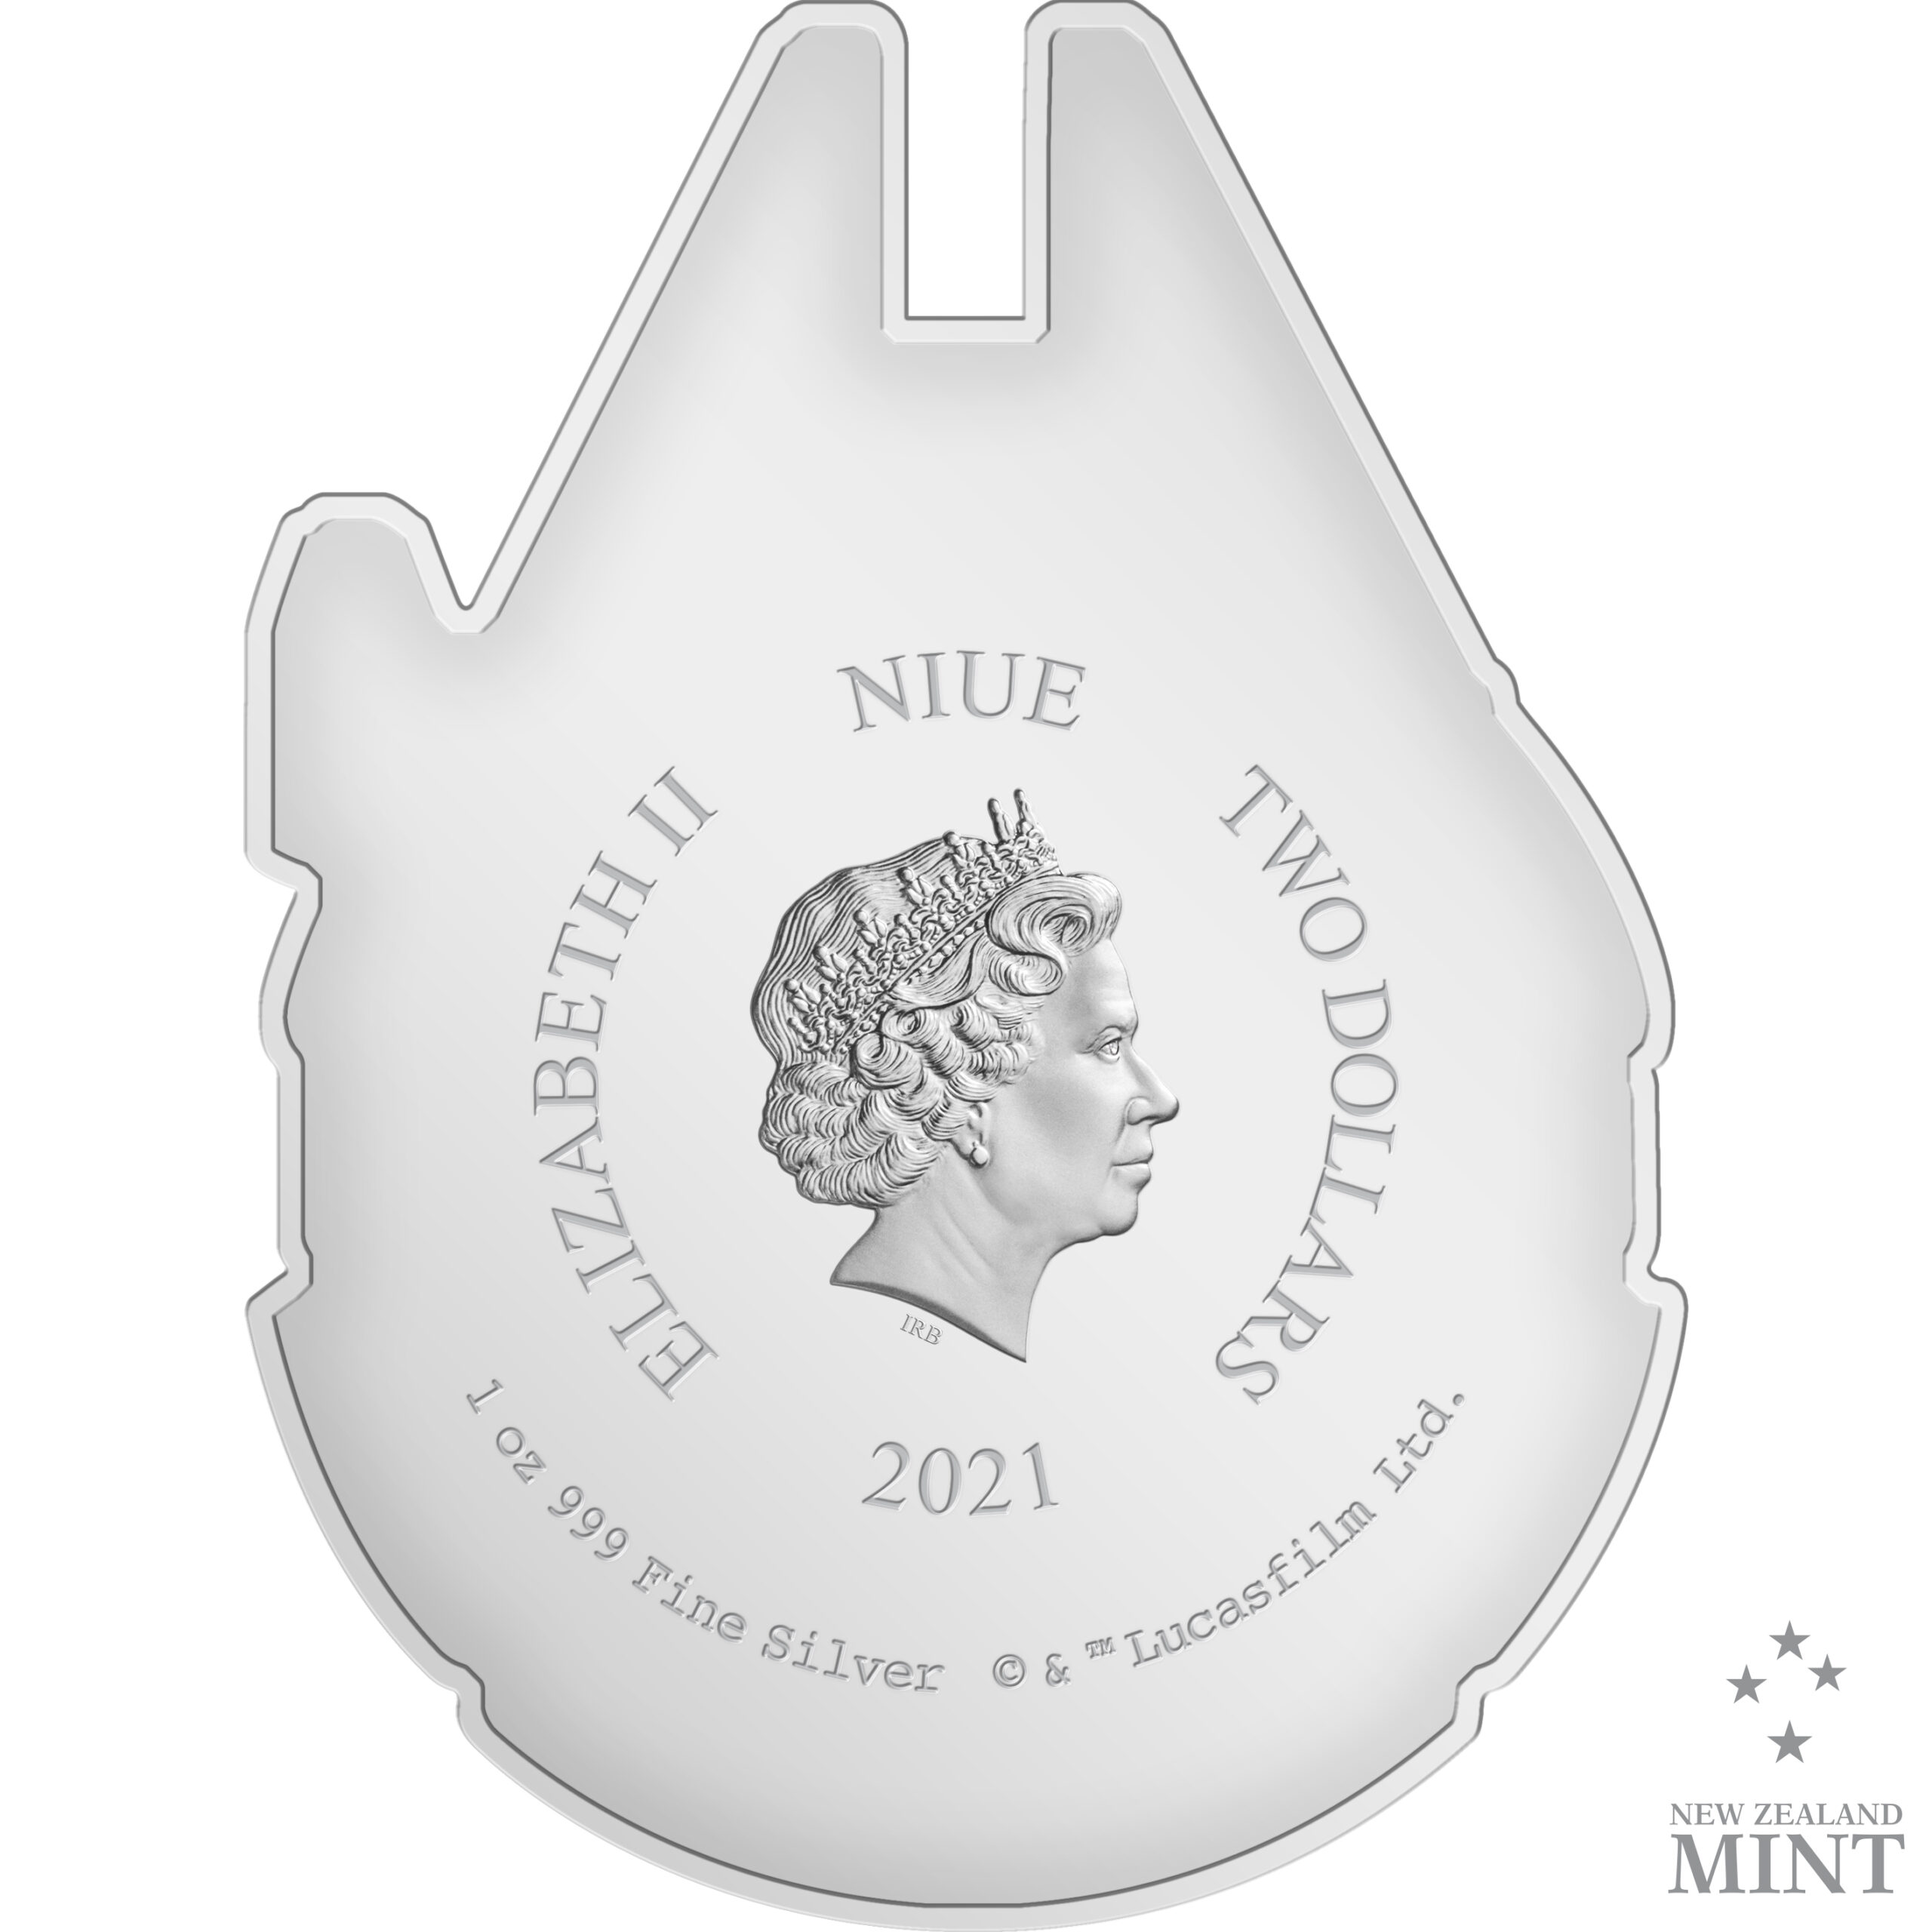 2021 Niue Star Wars Millennium Falcon Shaped 1 oz Silver Coin